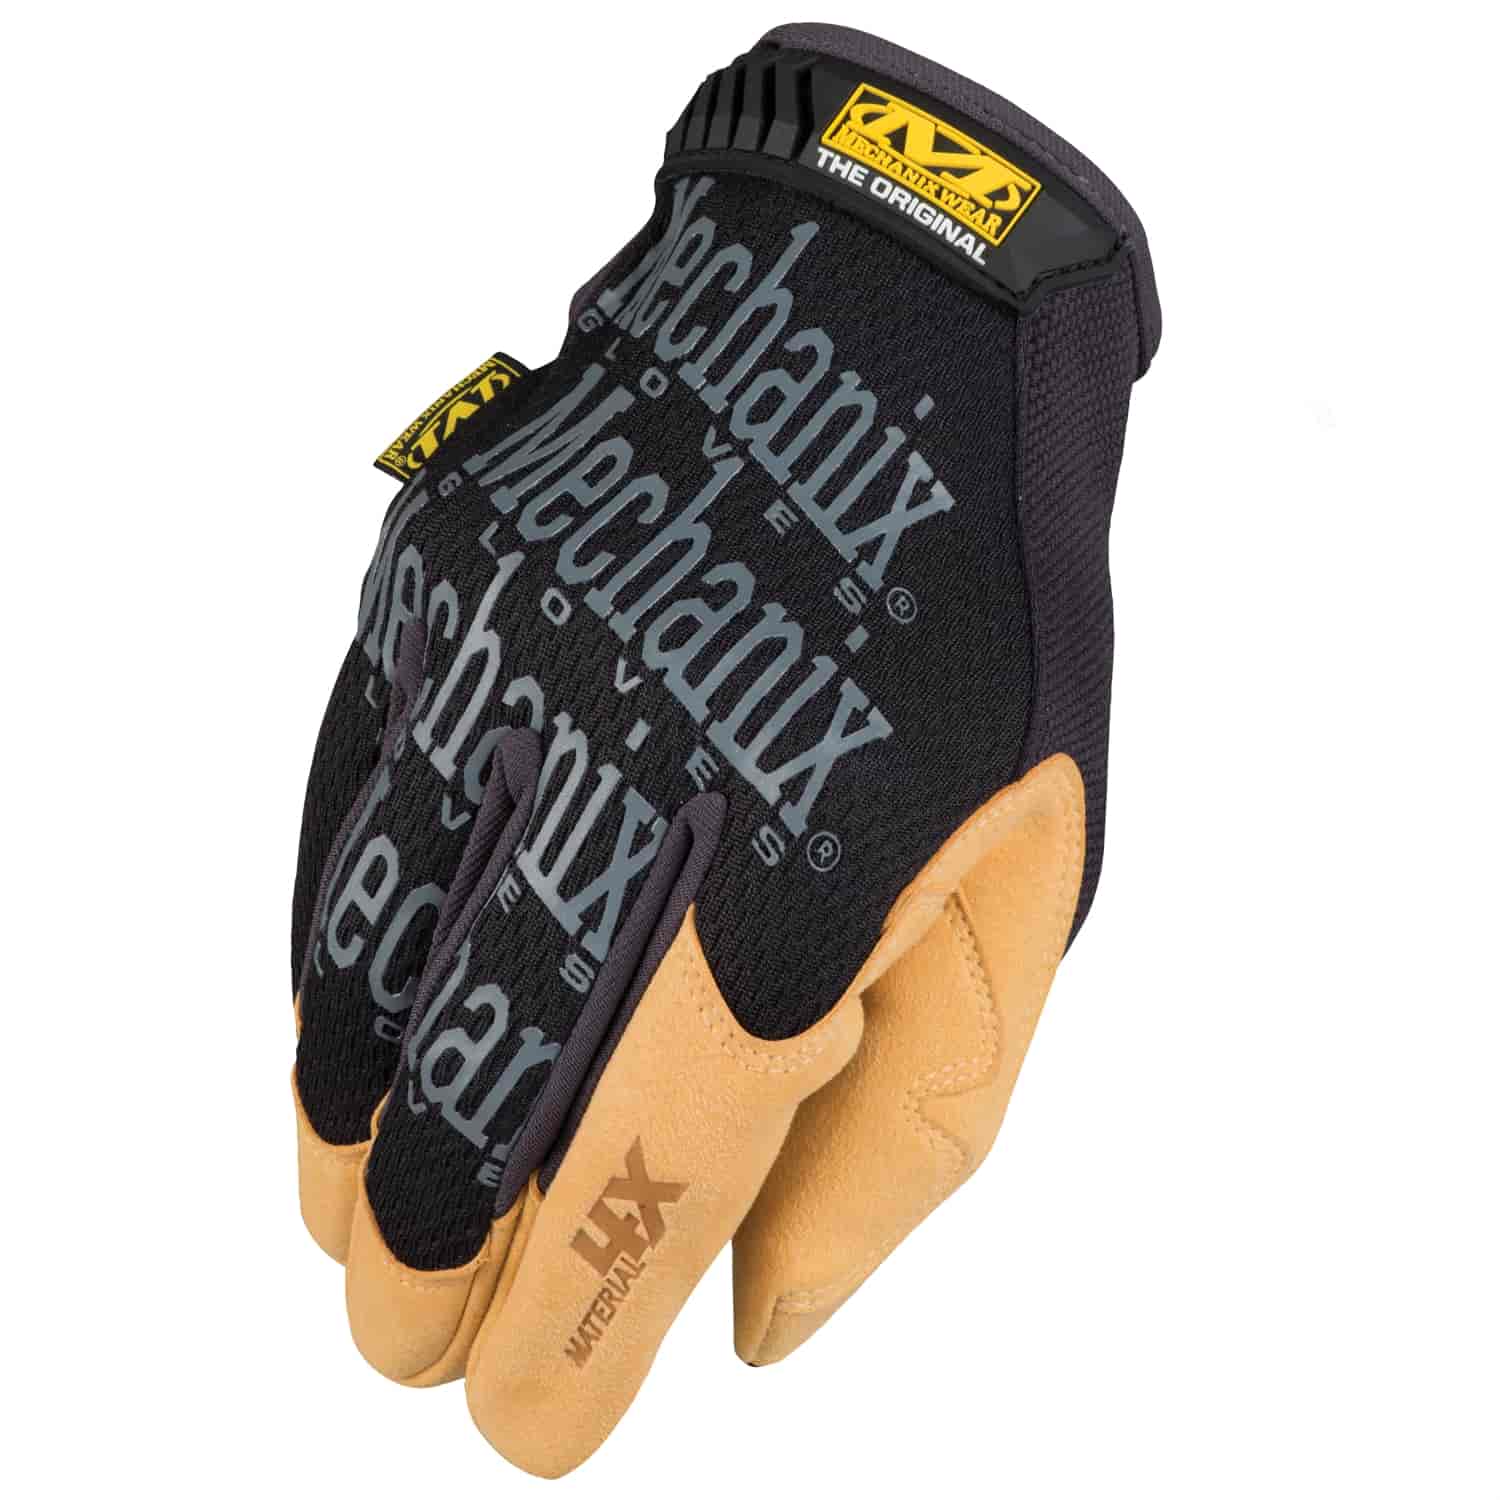 Mechanix Wear Material4X Original Gloves